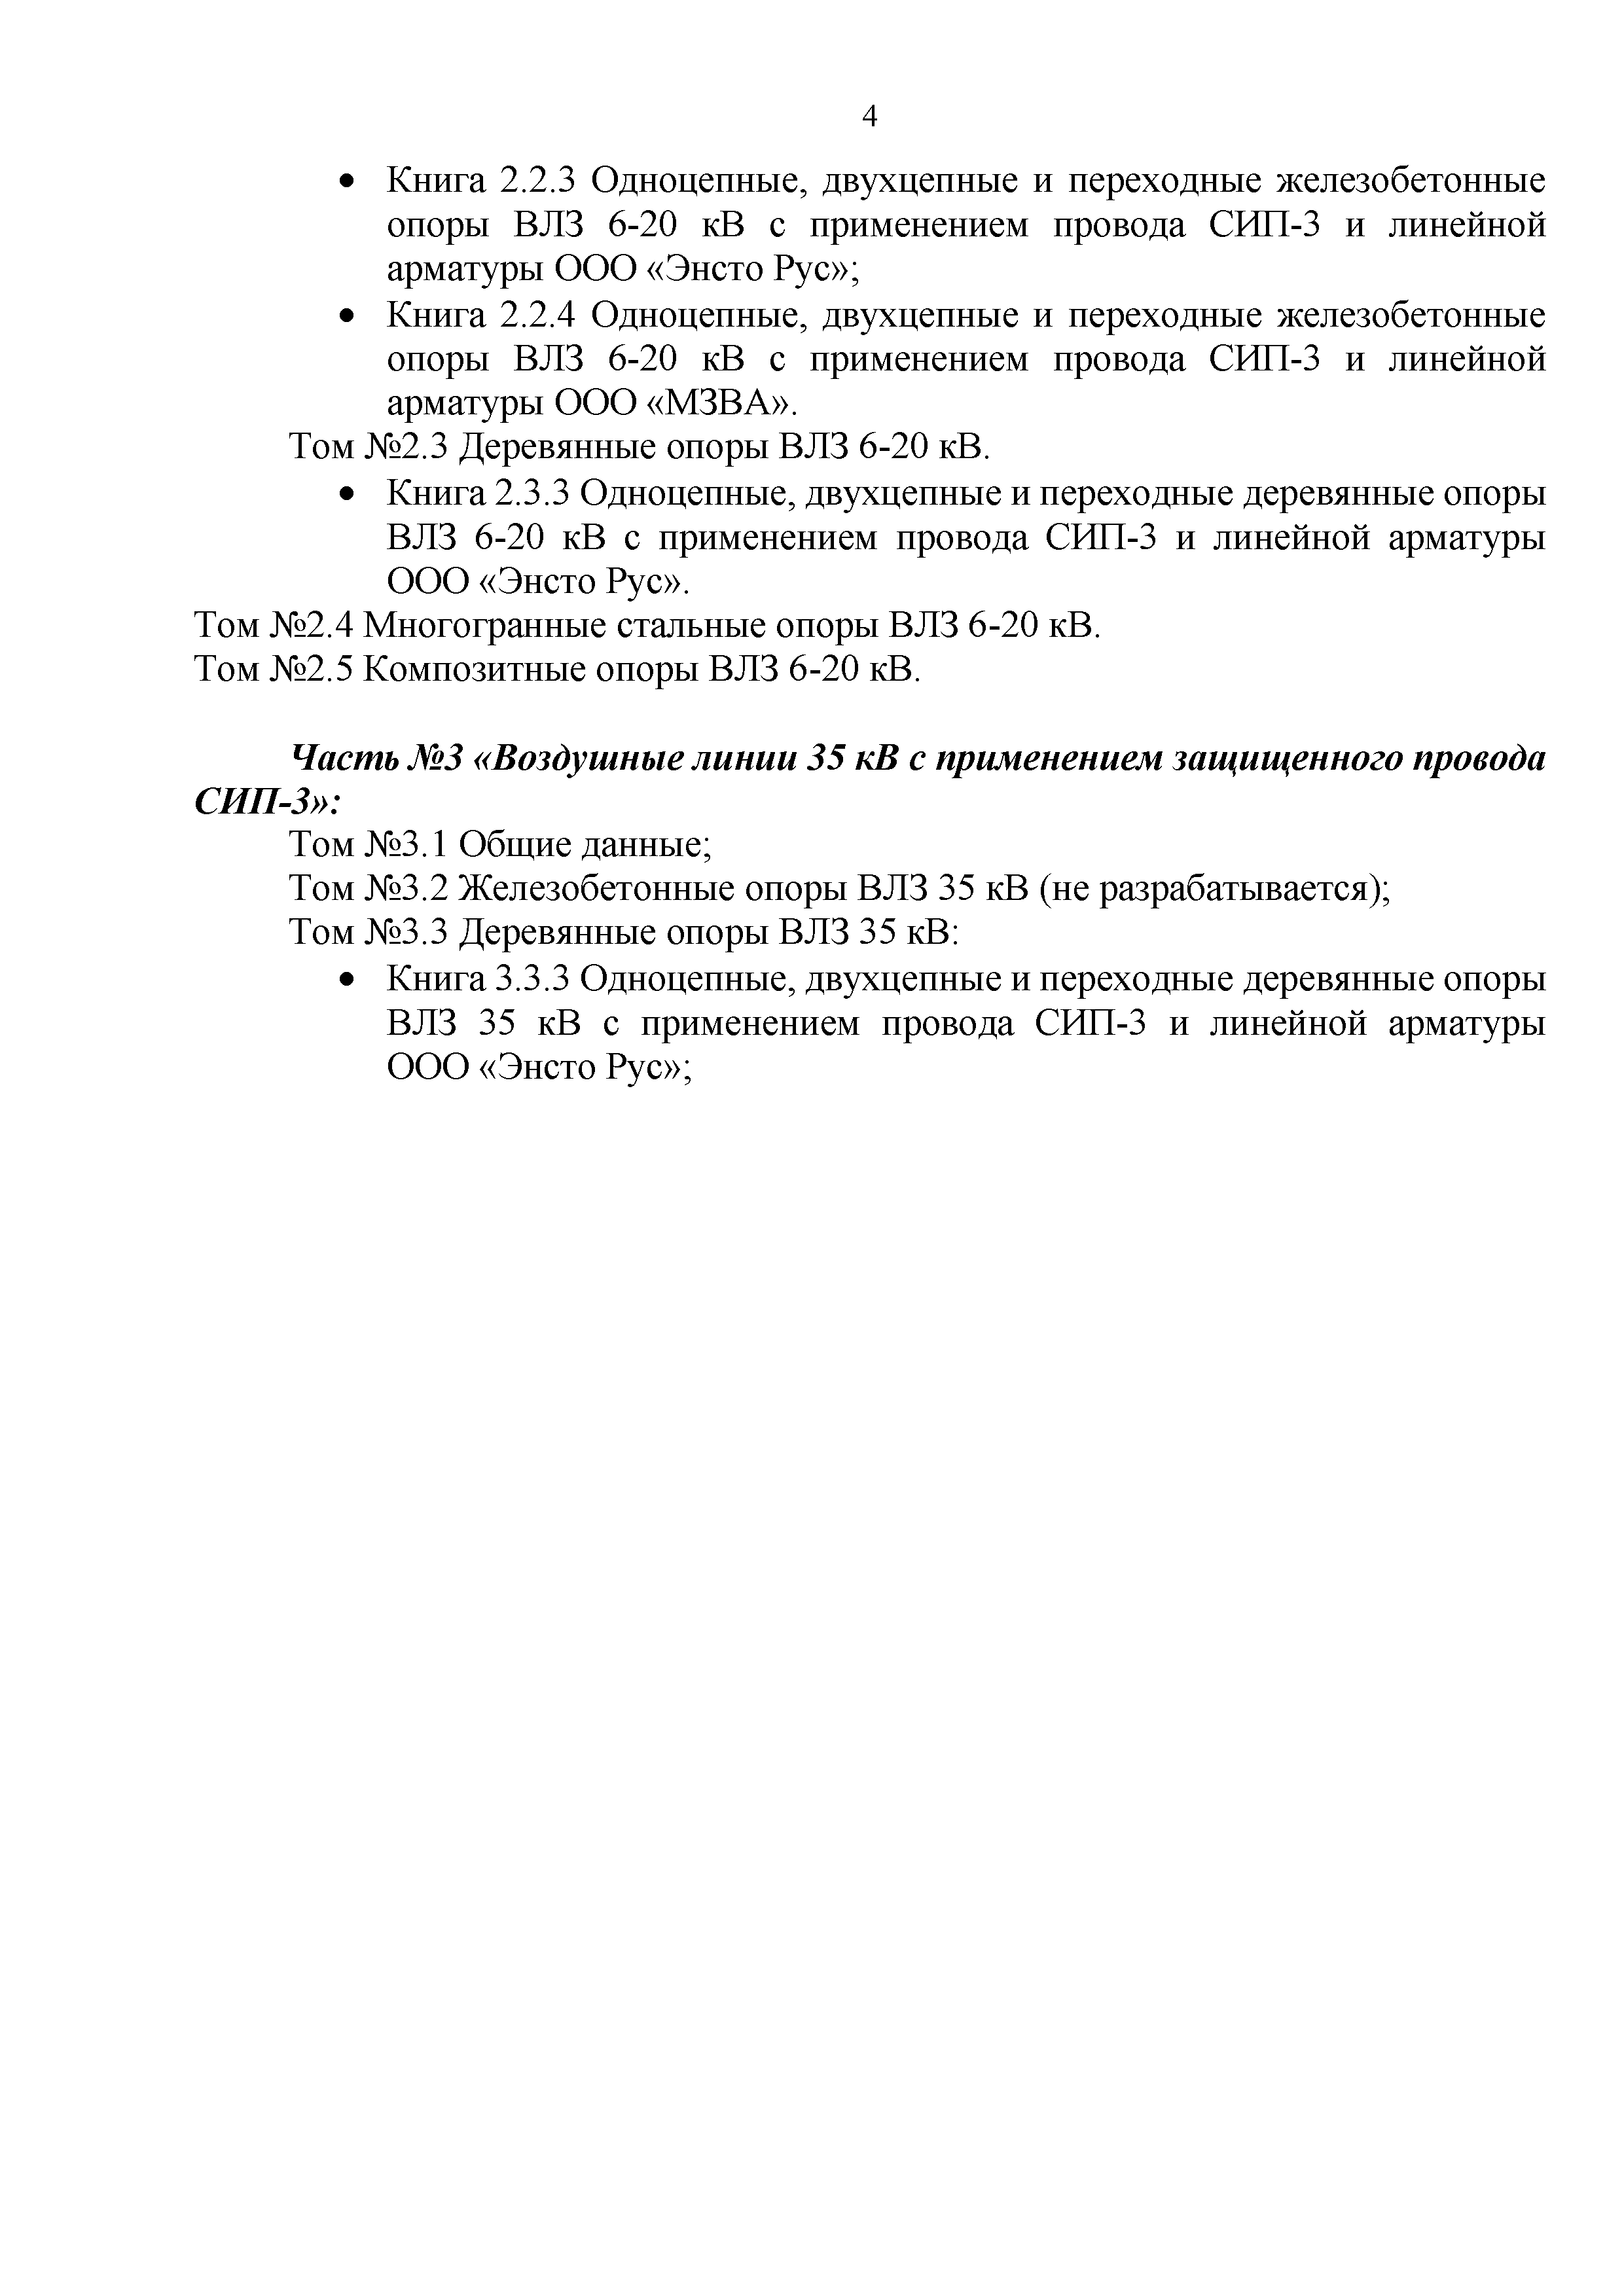 СТО 34.01-2.2-027-2017